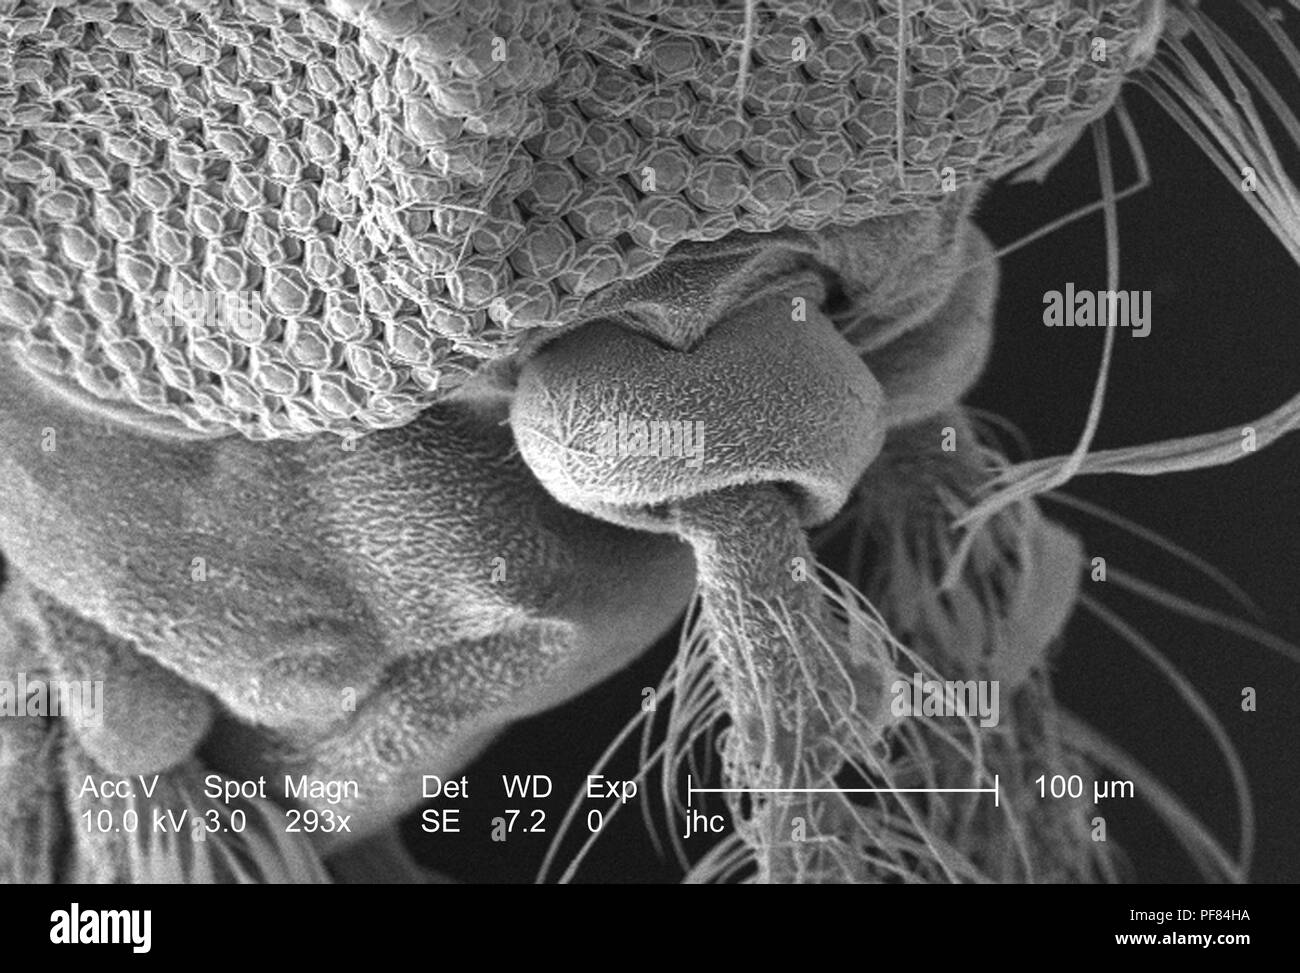 Caratteristiche morfologiche sulla superficie exoskeletal di Anopheles dirus zanzare antenna pedicel, rivelata in 293x di scansione ingrandita al microscopio elettronico (SEM) immagine, 2006. Immagine cortesia di centri per il controllo delle malattie (CDC) / Dr Paolo Howell. () Foto Stock